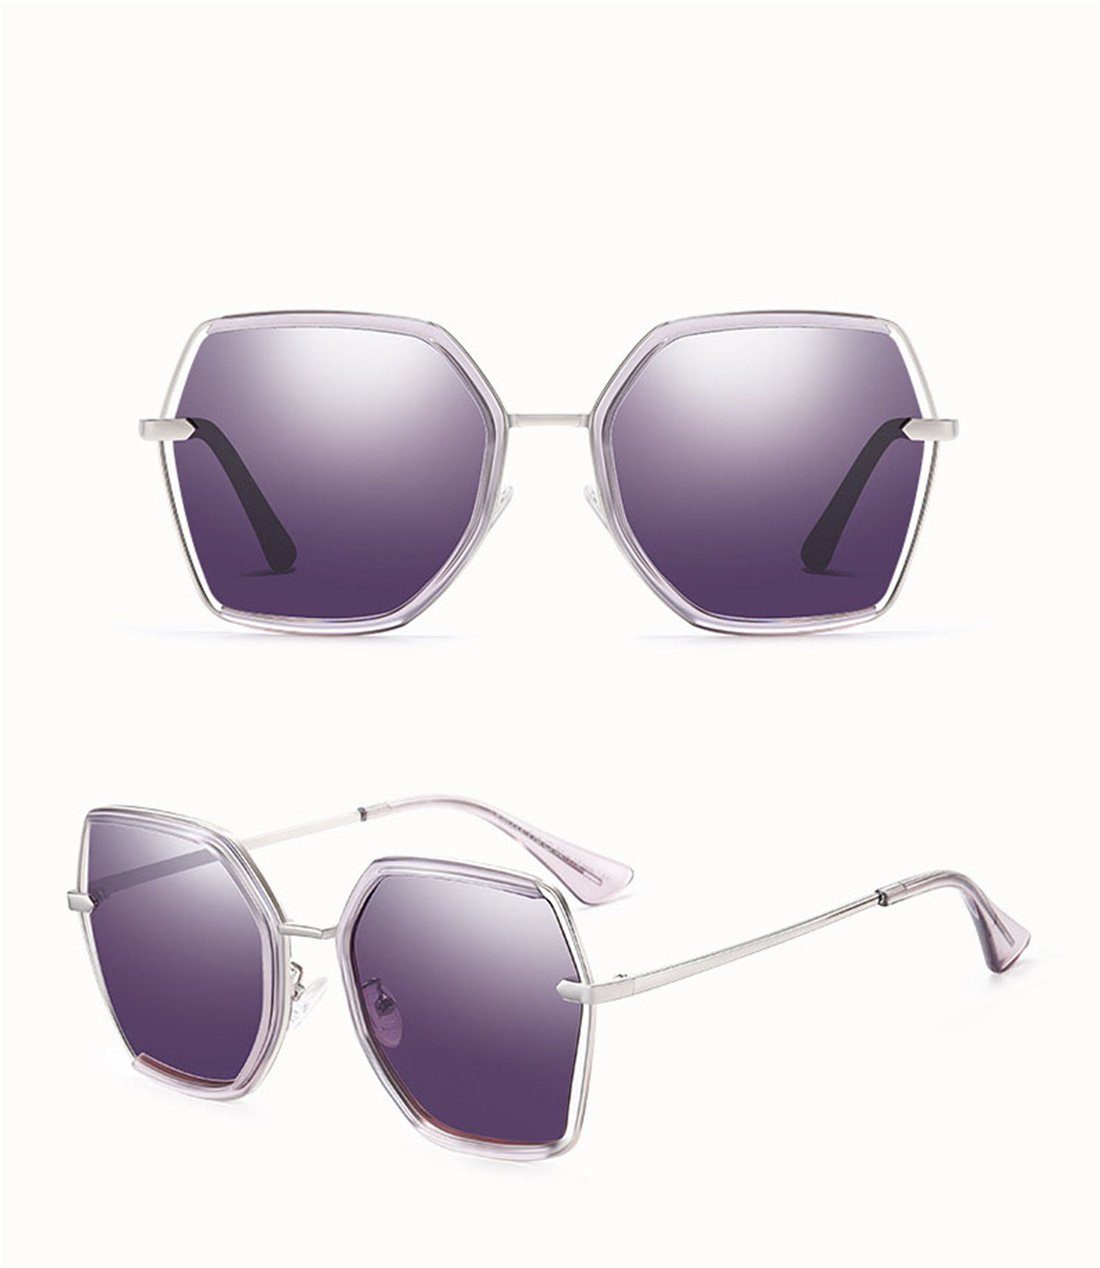 Sonnenbrille Sonnenbrille, Braun polarisierte DÖRÖY Sonnenschirme Sonnenbrille Damen Mode Box